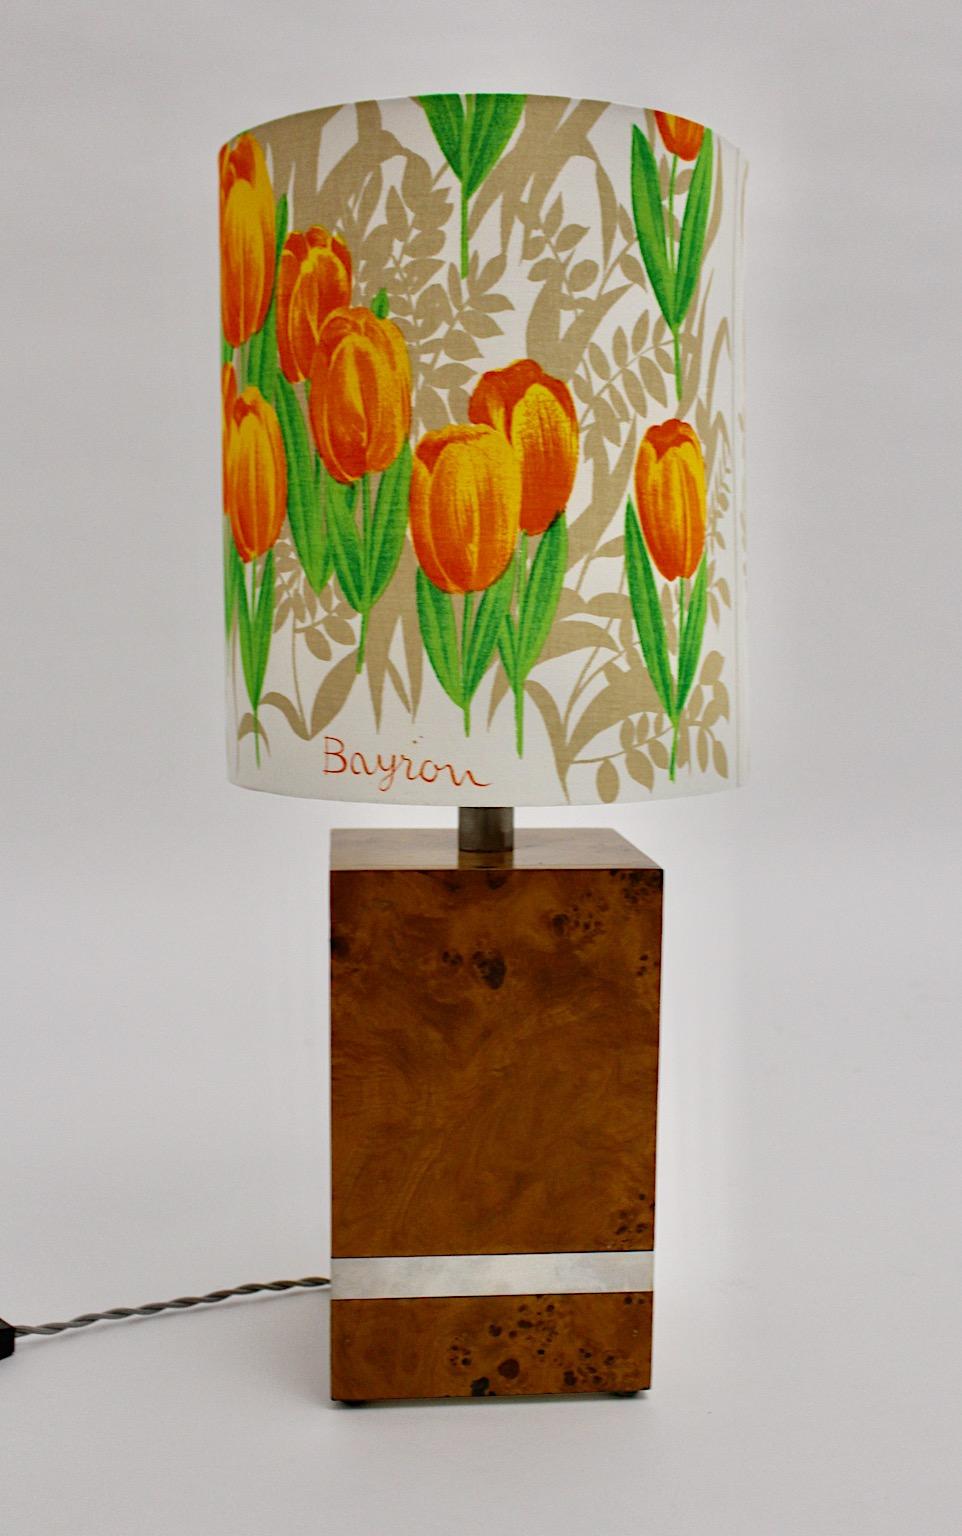 Hollywood Regency Style Vintage Tischlampe aus Pappelholzfurnier und Chromdetails am rechteckigen Sockel.
Der kürzlich handgefertigte Lampenschirm aus zartem Batiststoff zeigt Blumen in leuchtenden Farben wie Orange und Grün.
Während der